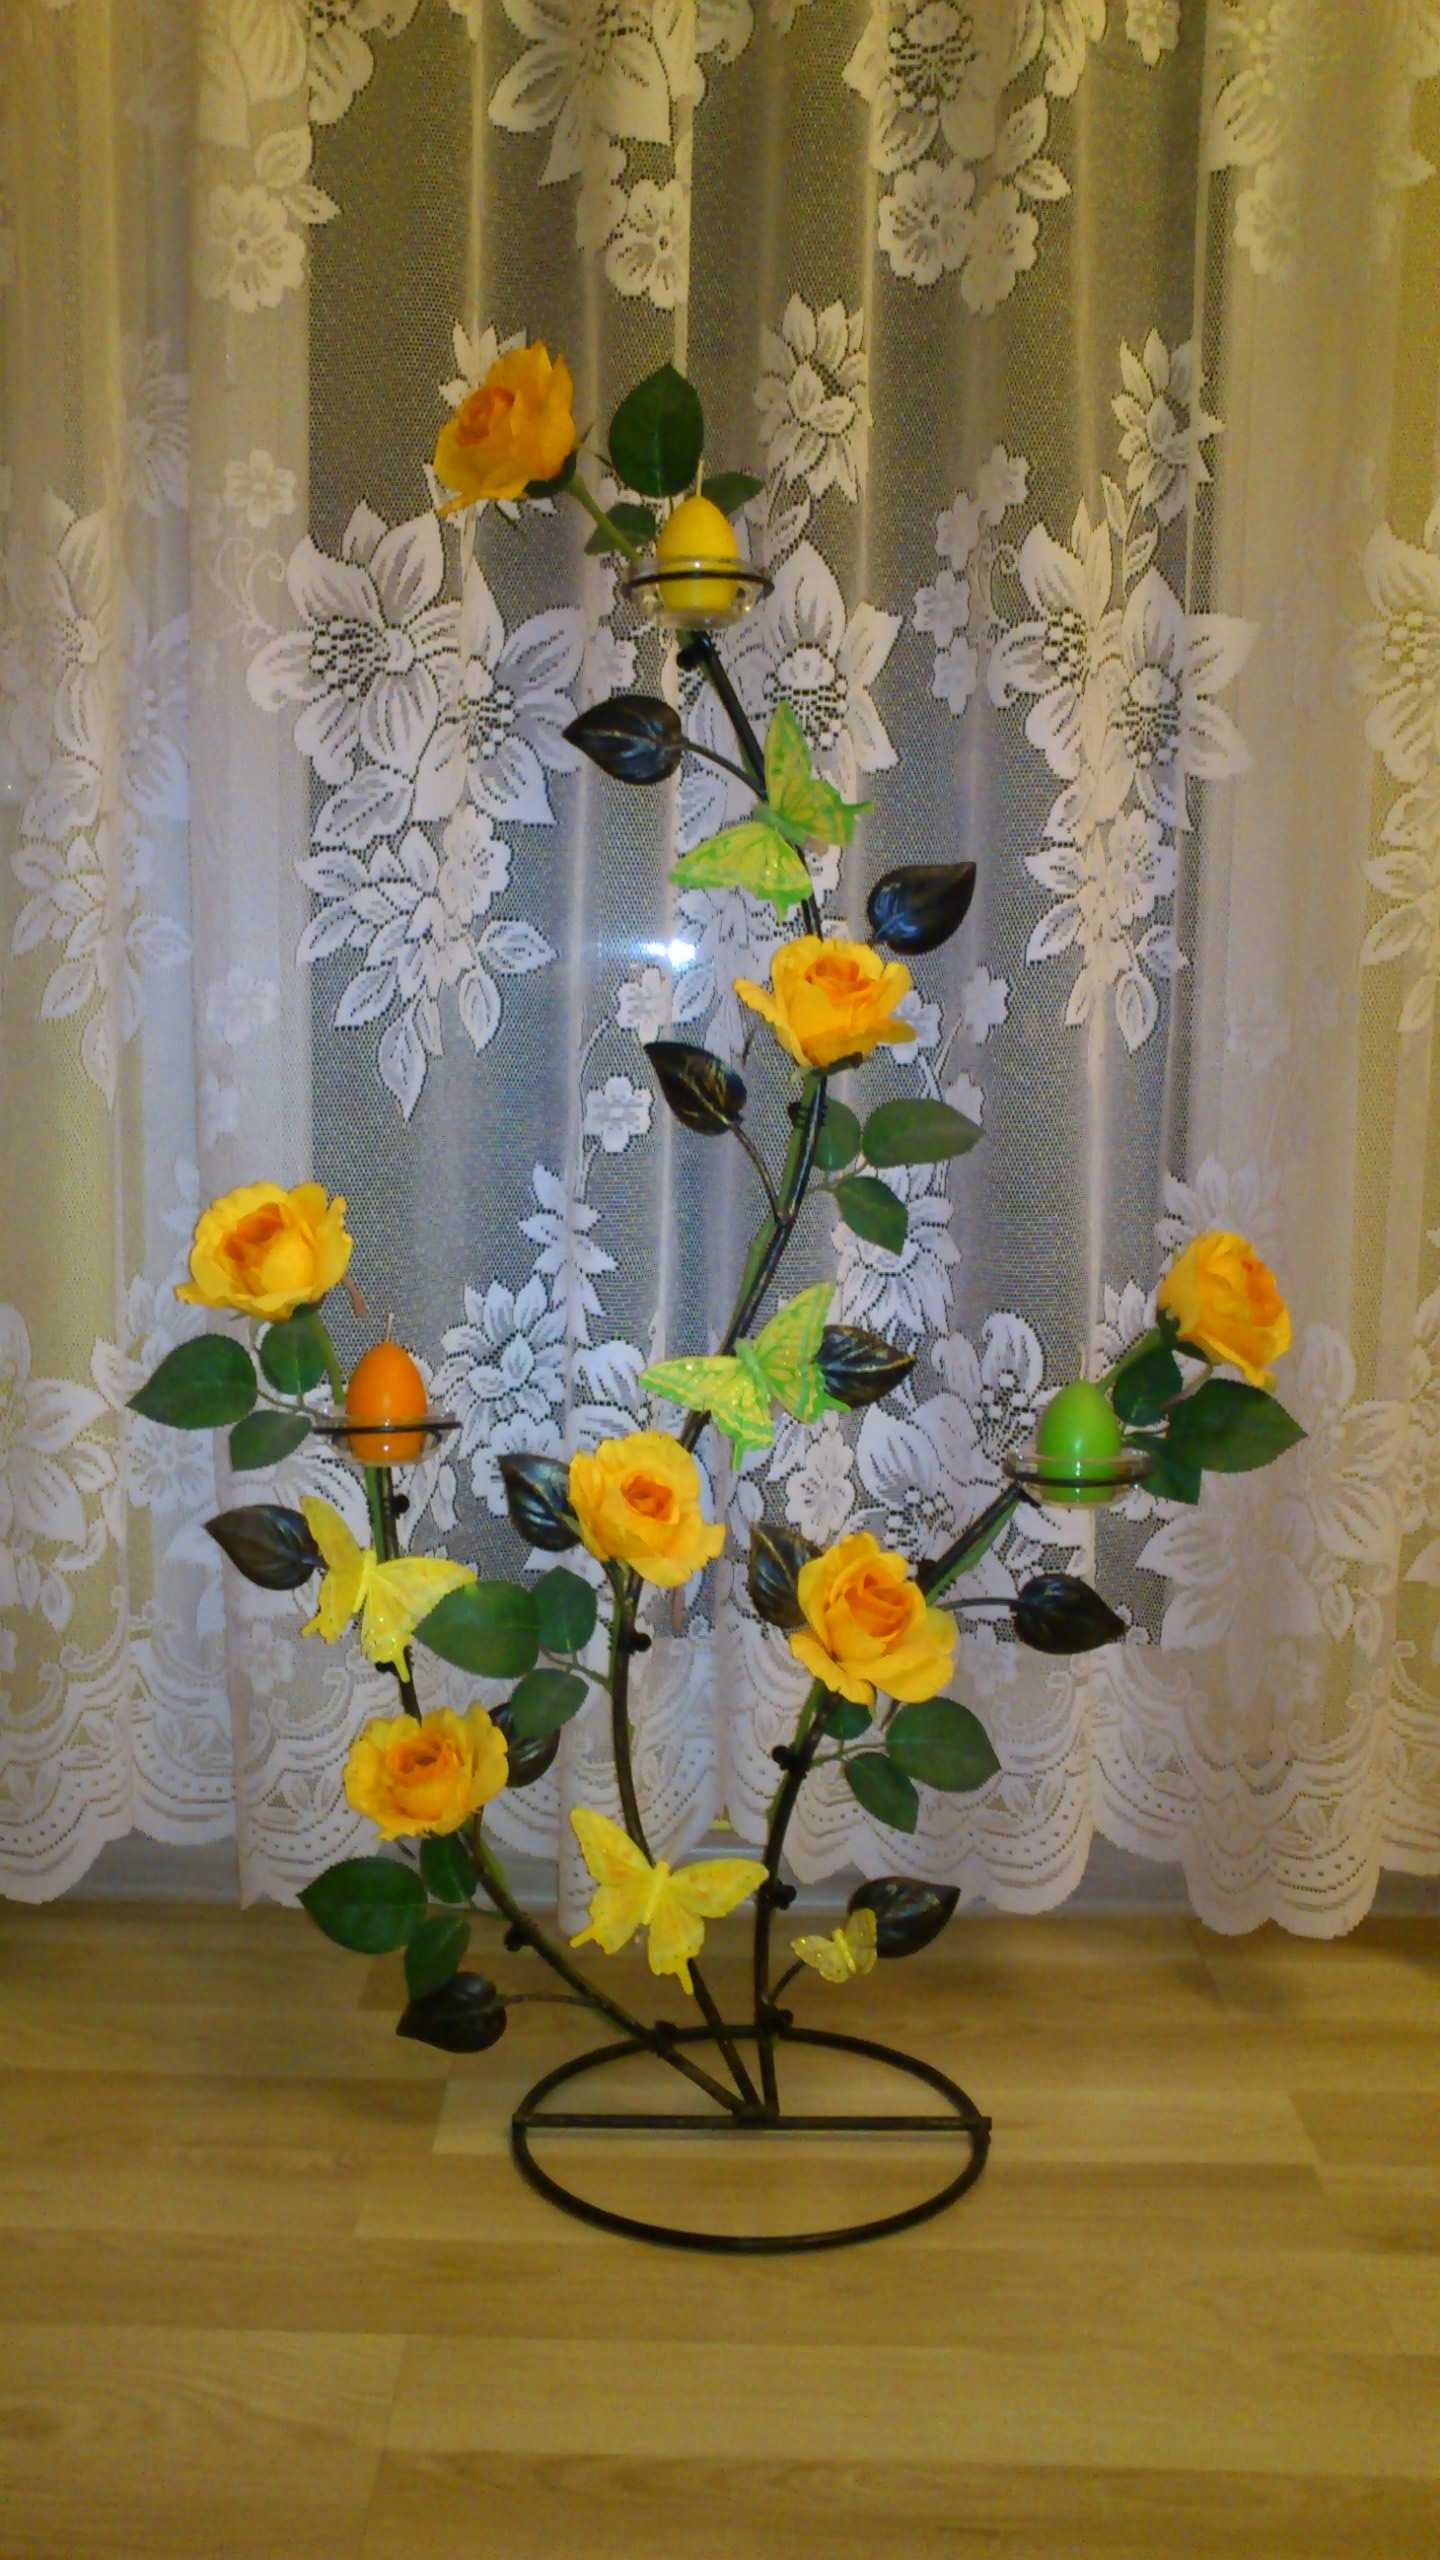 Kwietnik stojak podstawka dekoracyjna pod kwiaty świece solary duży